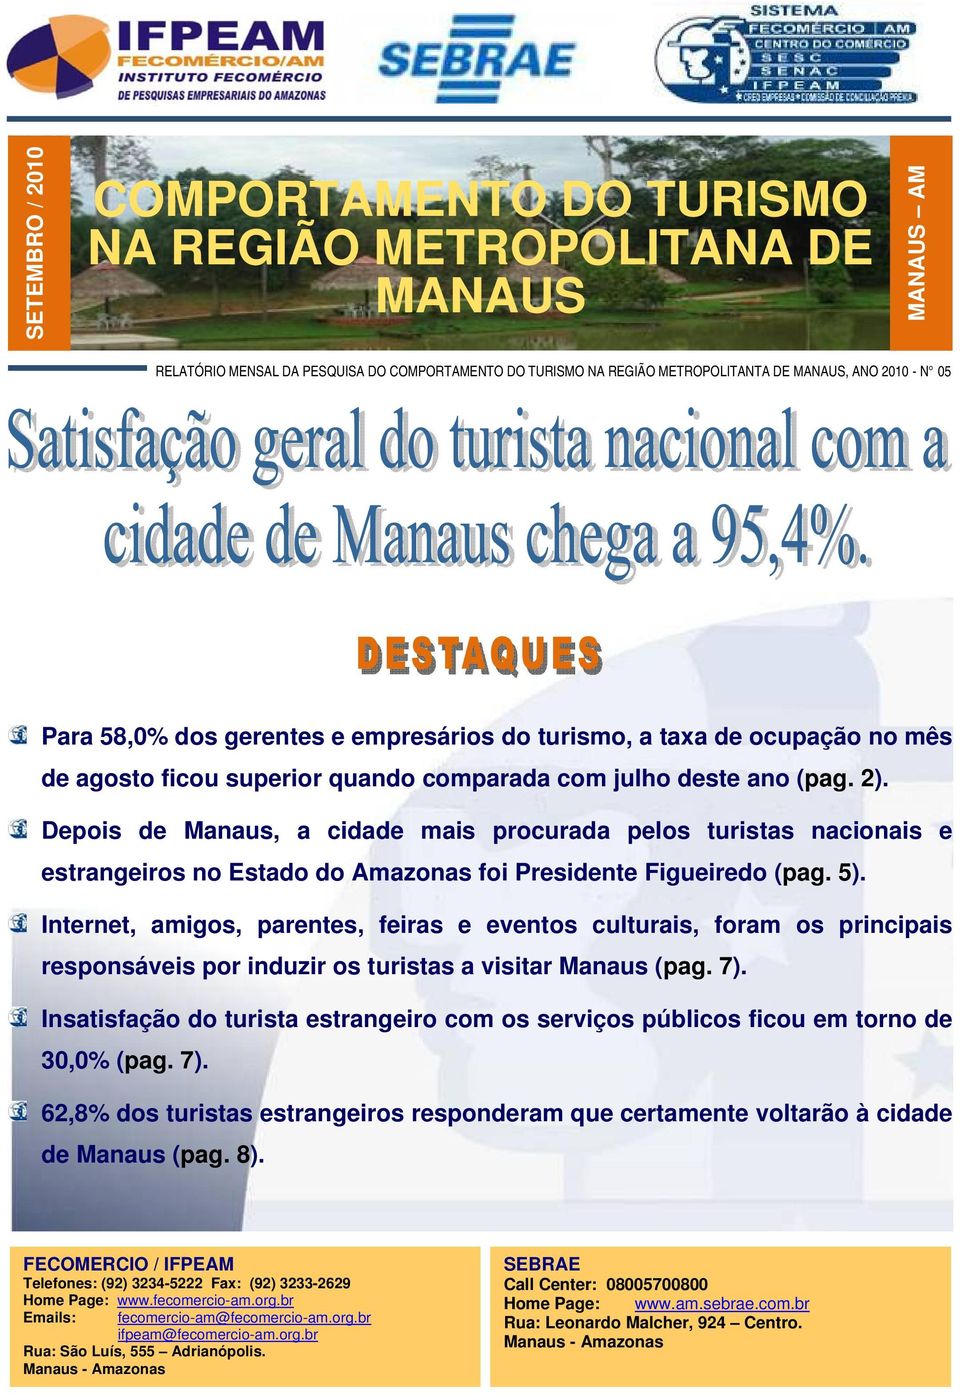 Depois de Manaus, a cidade mais procurada pelos turistas nacionais e estrangeiros no Estado do Amazonas foi Presidente Figueiredo (pag. 5).